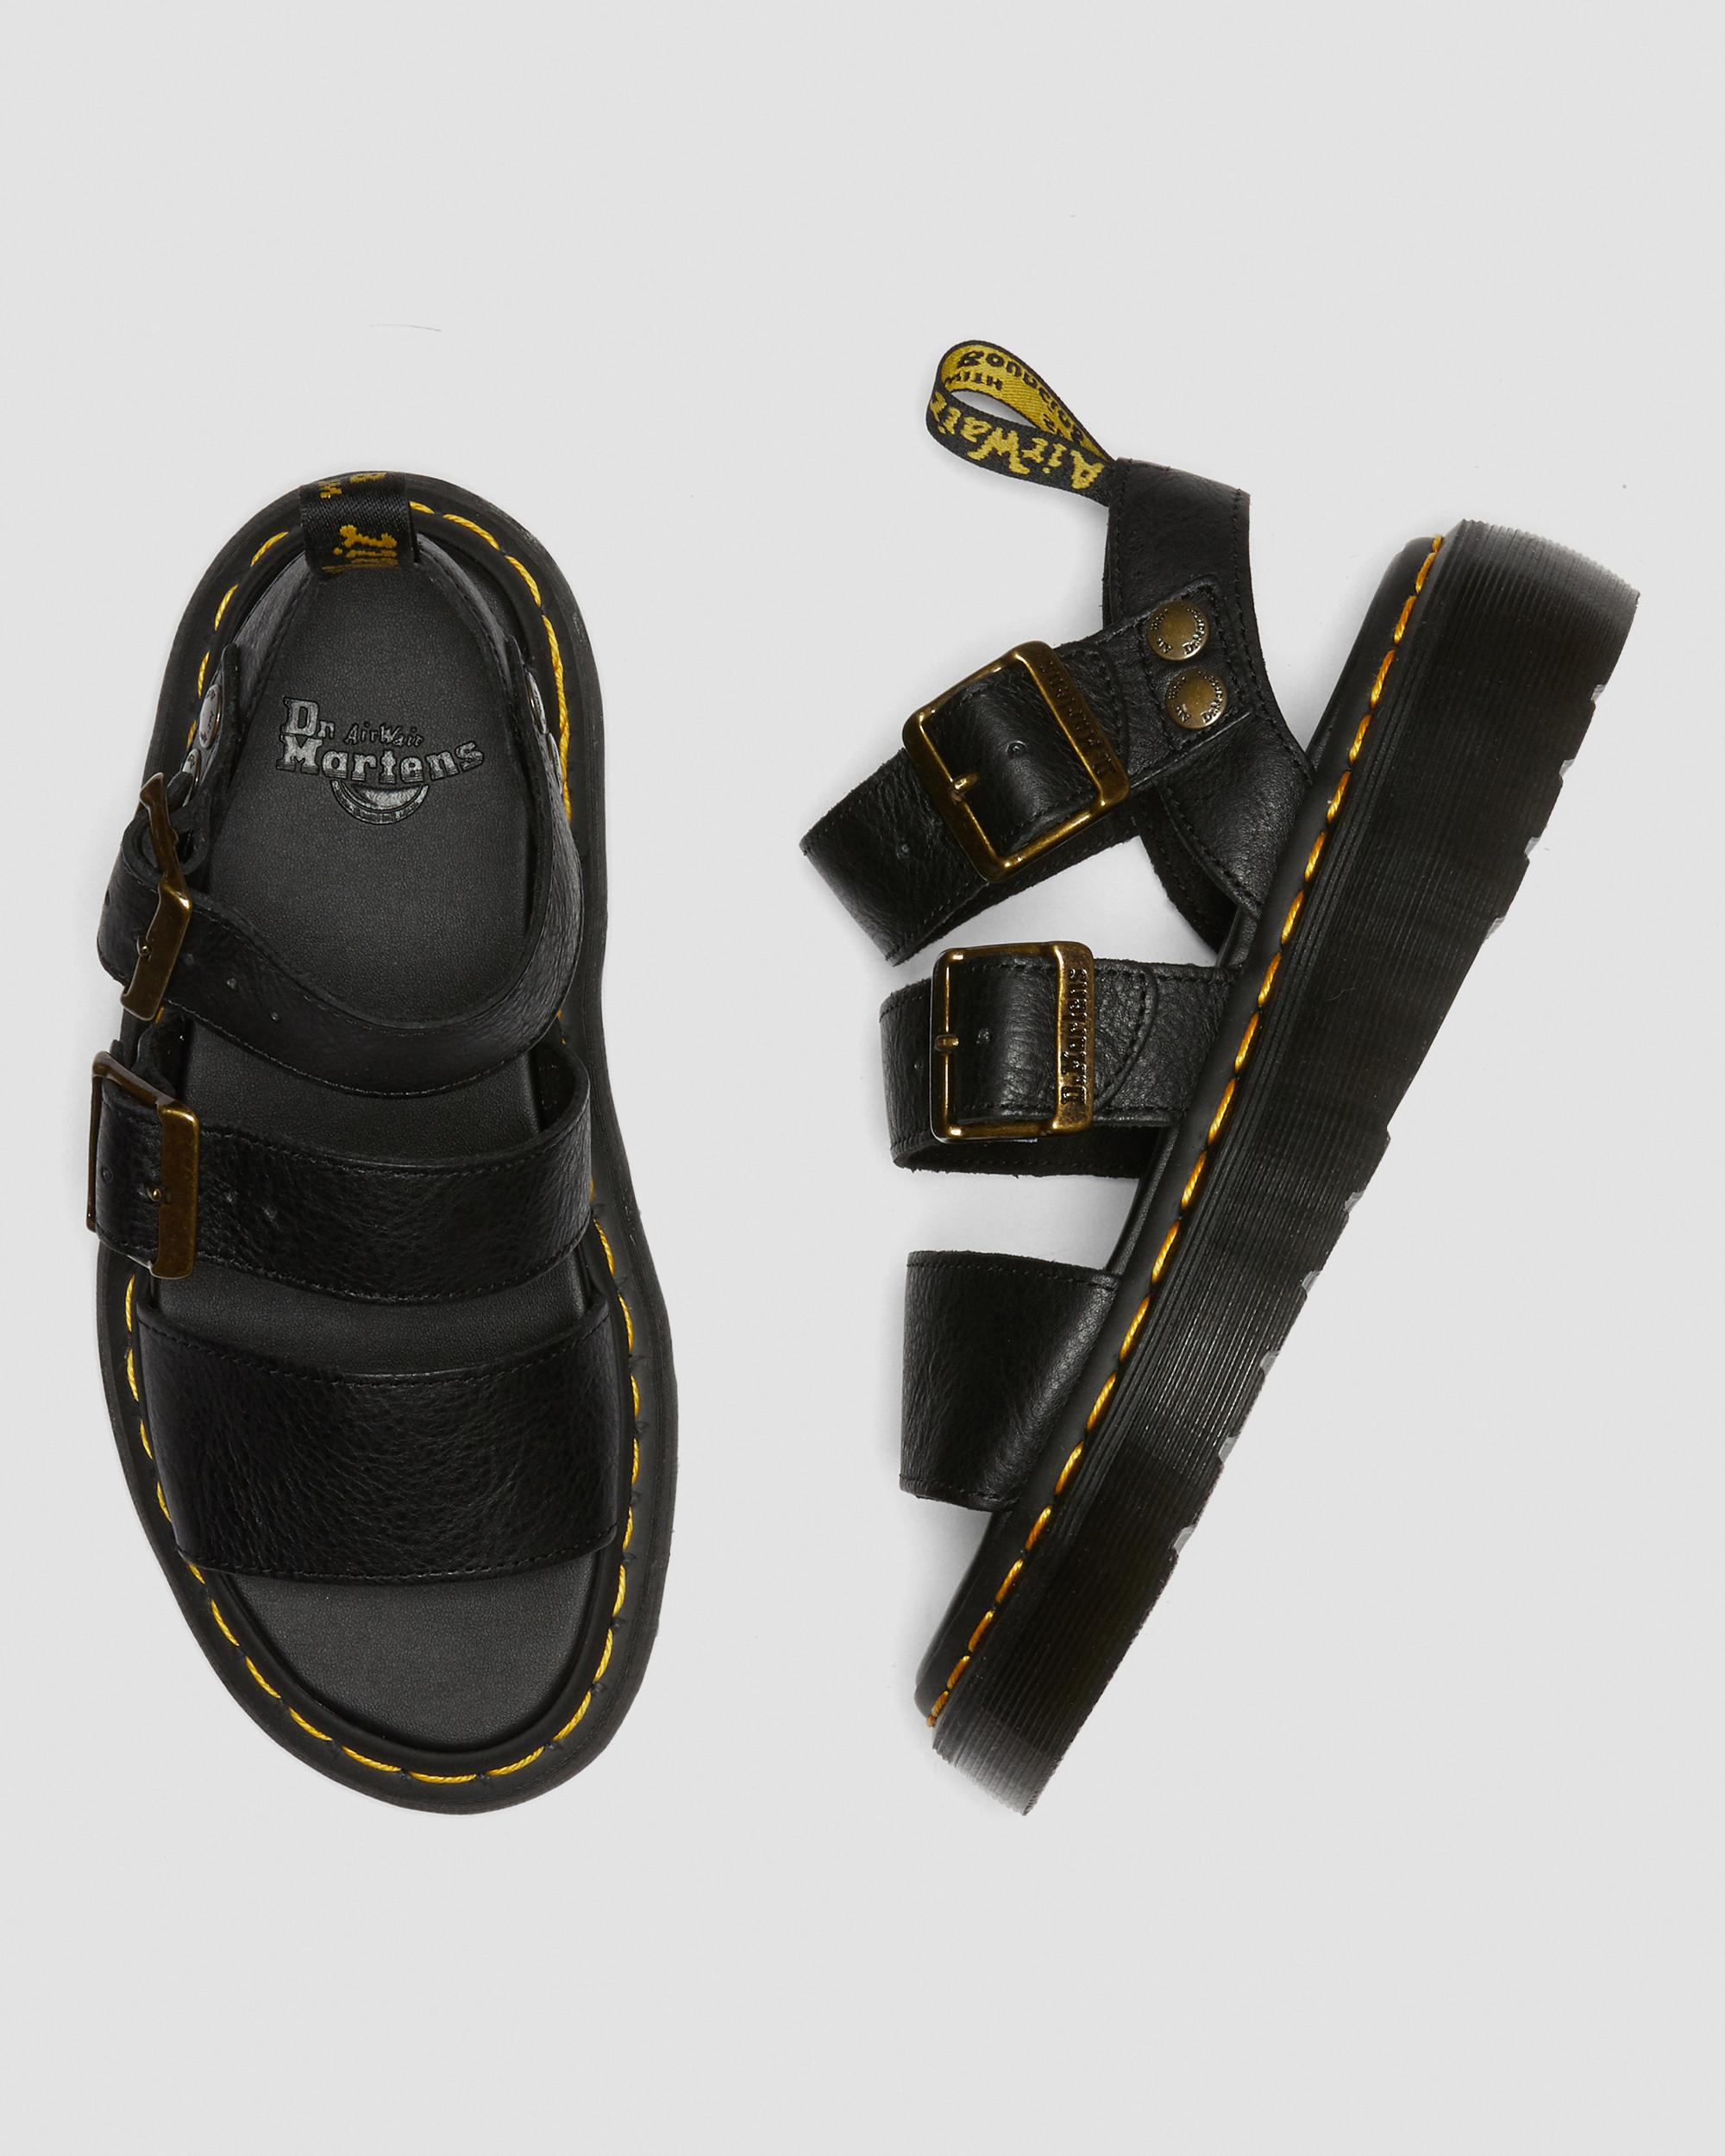 Gryphon Quad Leather Platform Sandals in Black